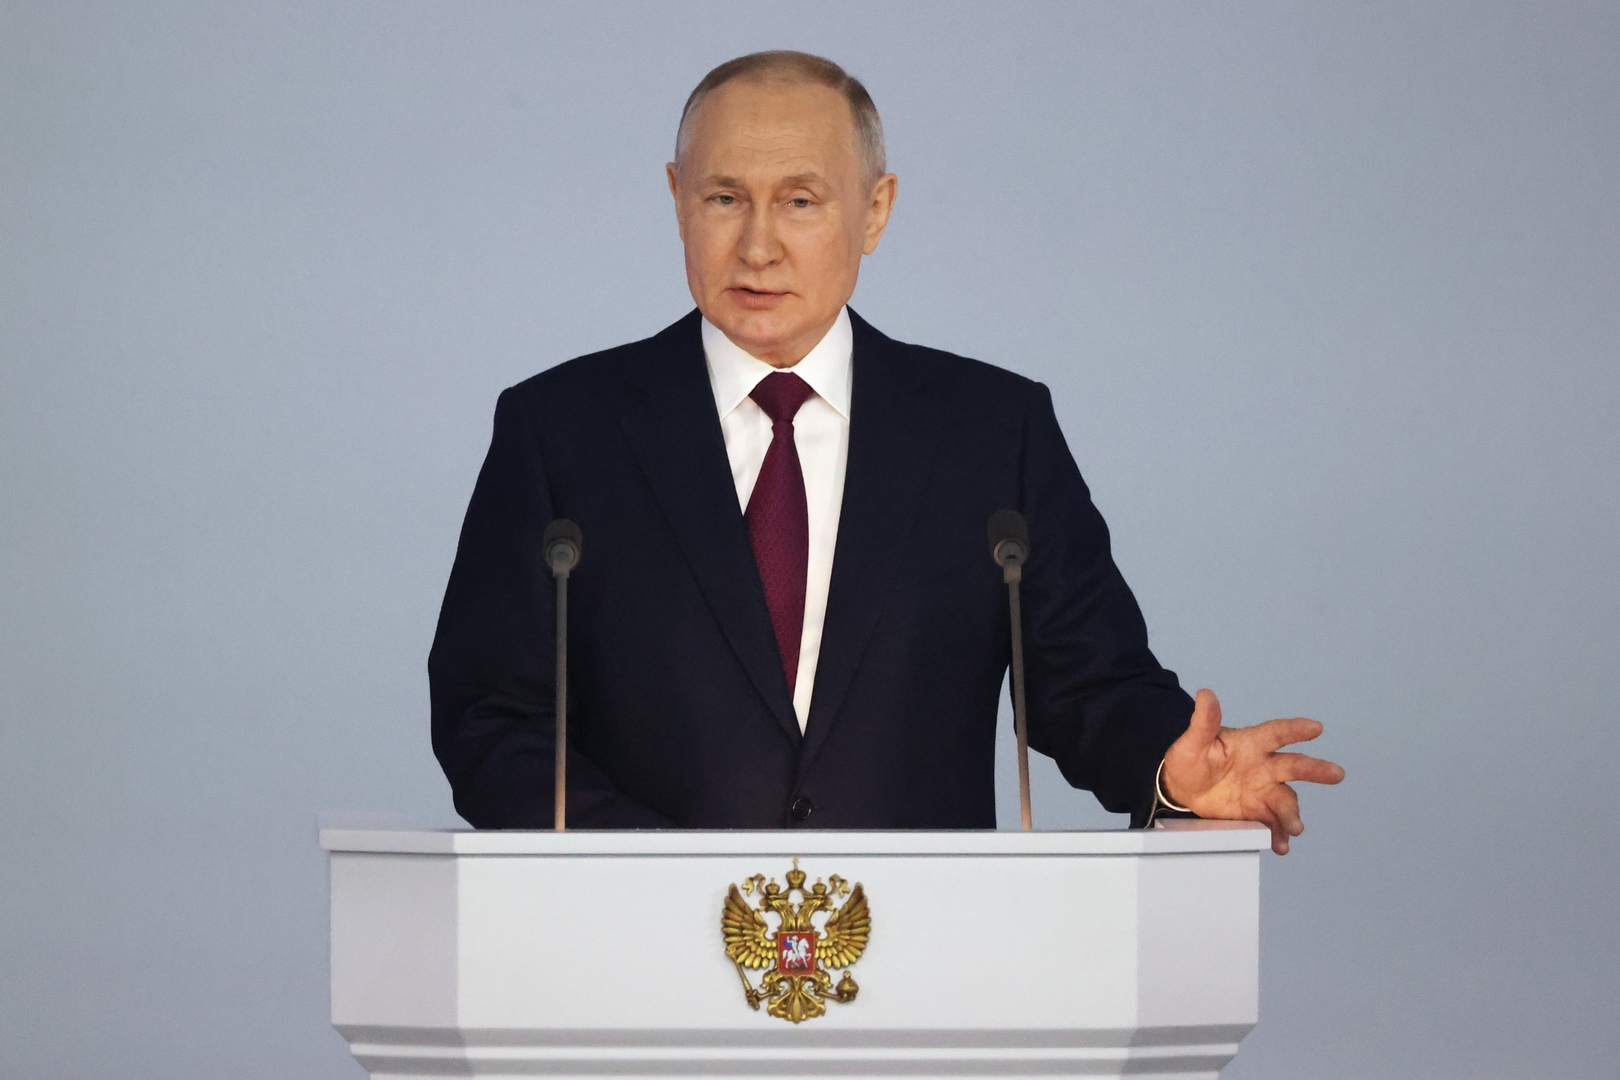 واشنطن تندد بما وصفته خطاب بوتين المعادي للغرب